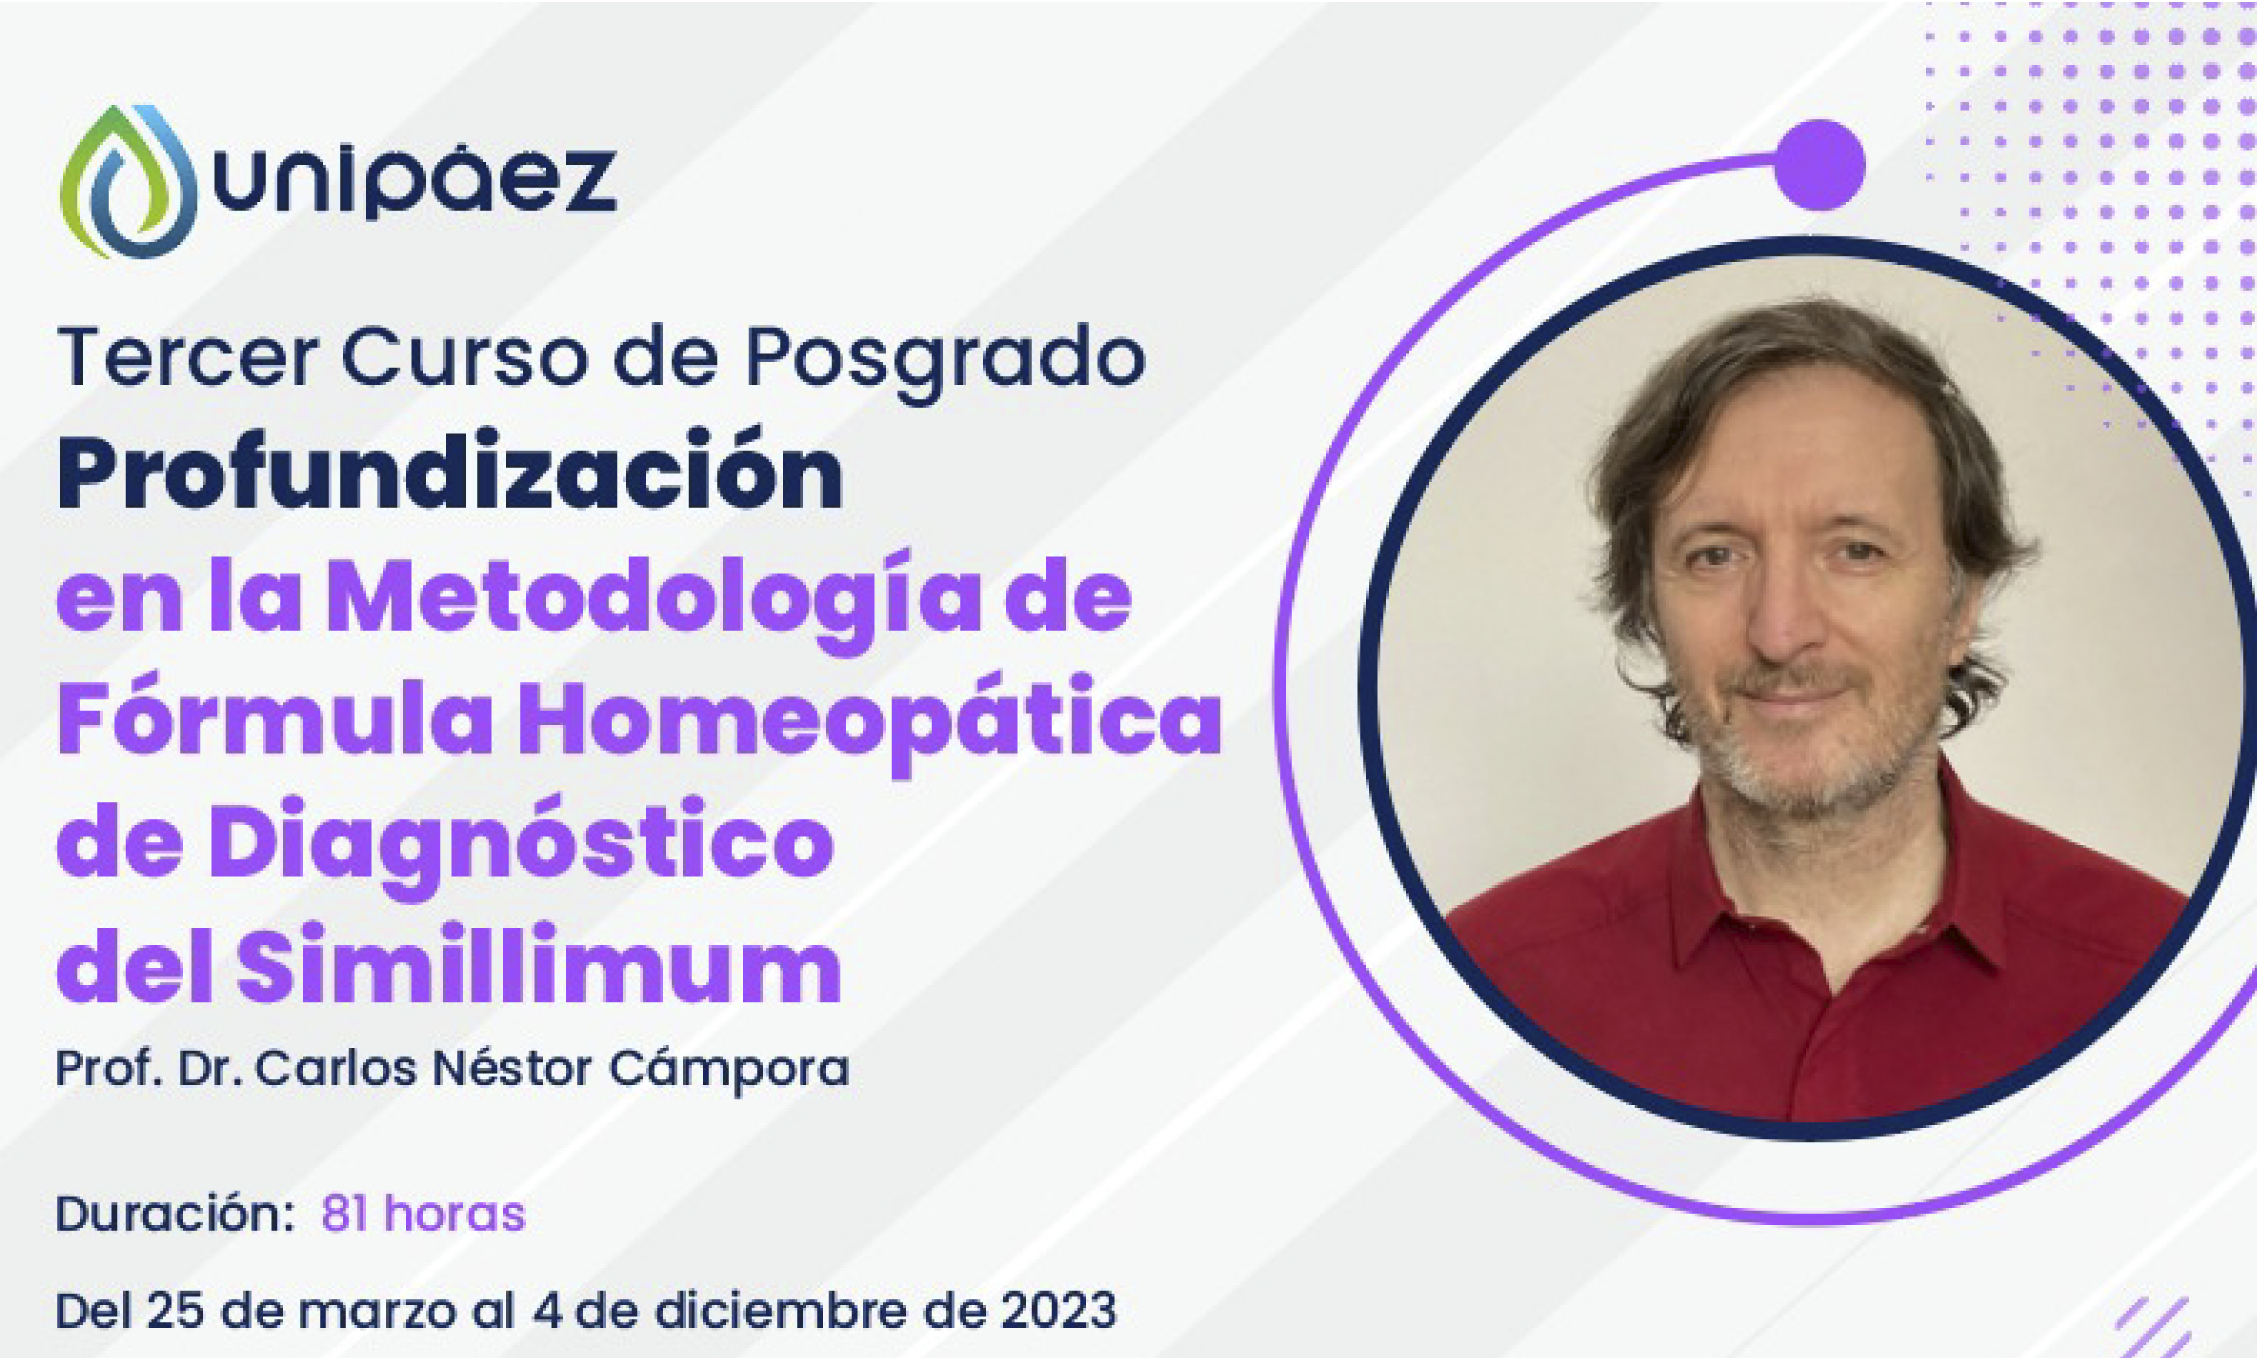 TERCER CURSO DE POSGRADO: Profundización en la Metodología de Fórmula Homeopática de Diagnóstico del Simillimum